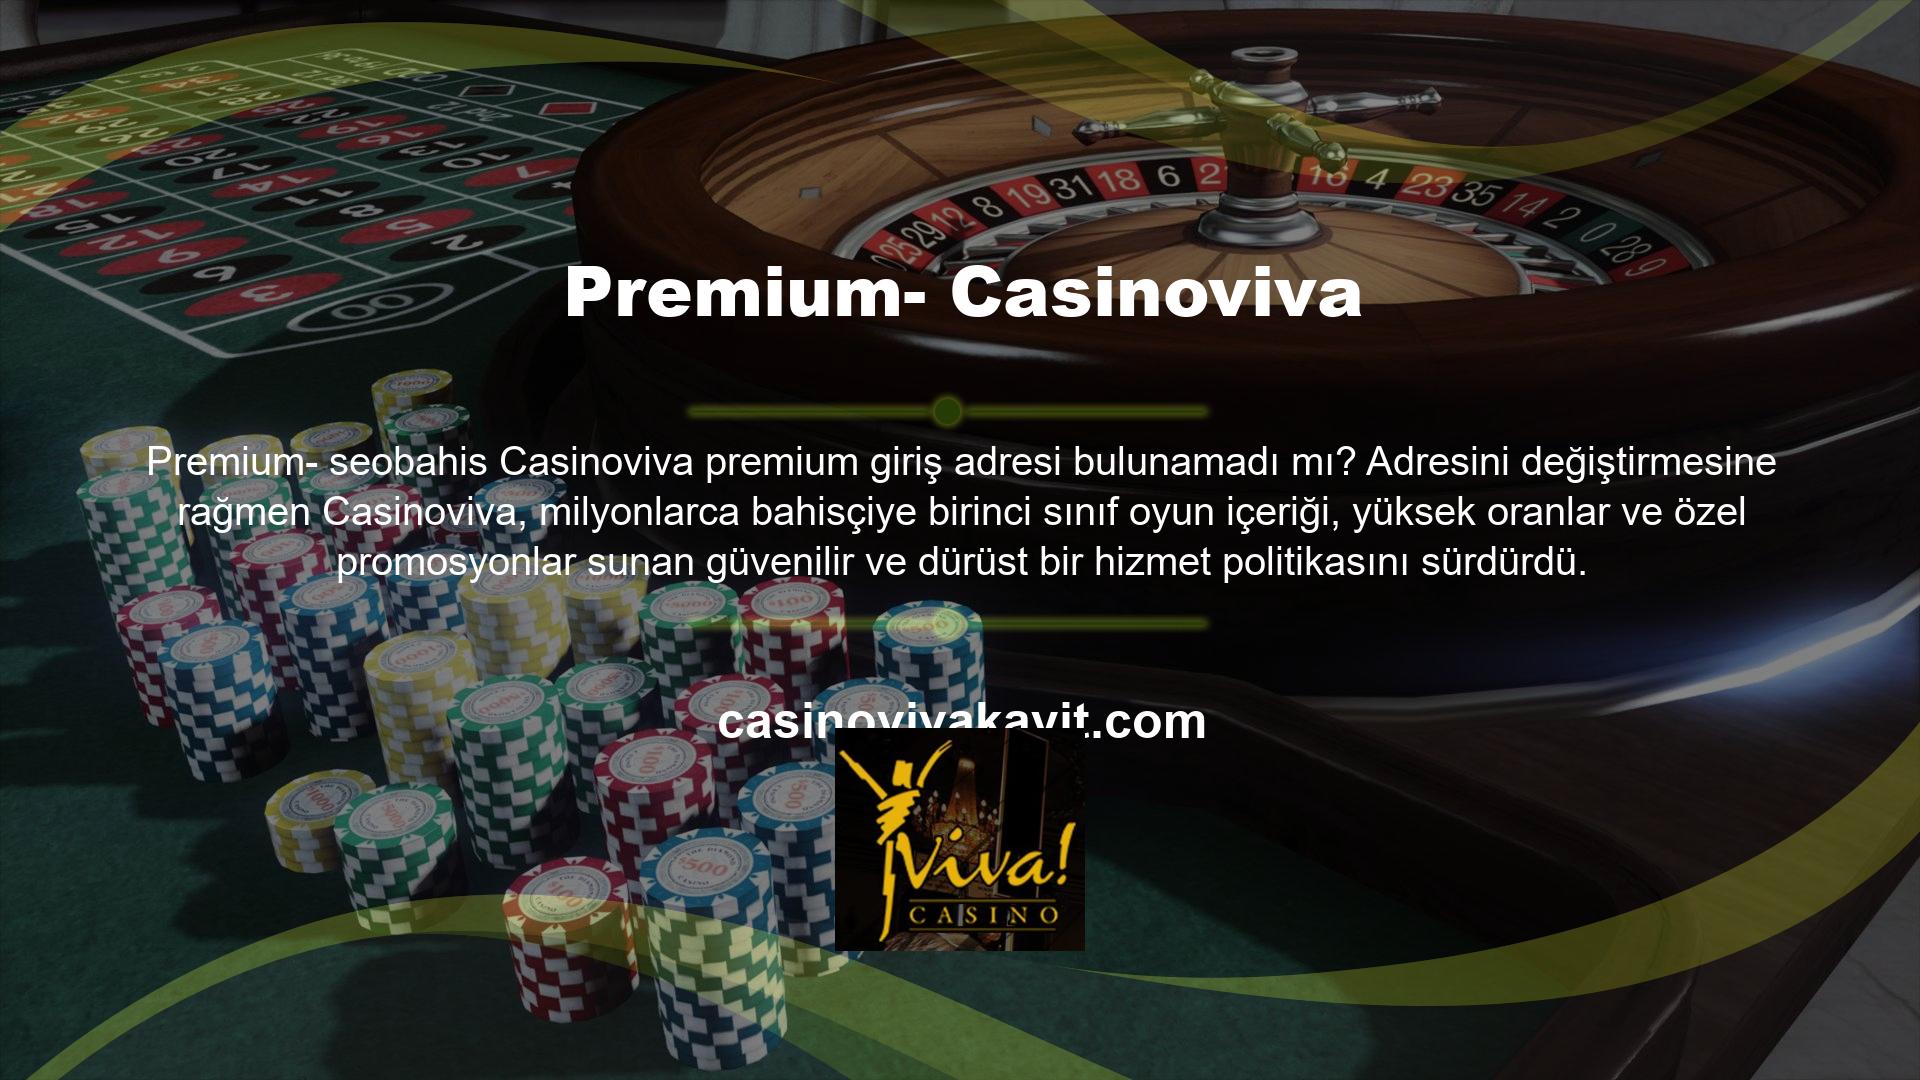 Yeni bir yere taşınan Casinoviva, birinci sınıf jackpot slot oyunlarının ve krupiyeli pokerin yer aldığı günlük turnuvalarda galip geldi; blackjack, rulet masaları ve çok sayıda spor bahis pazarı